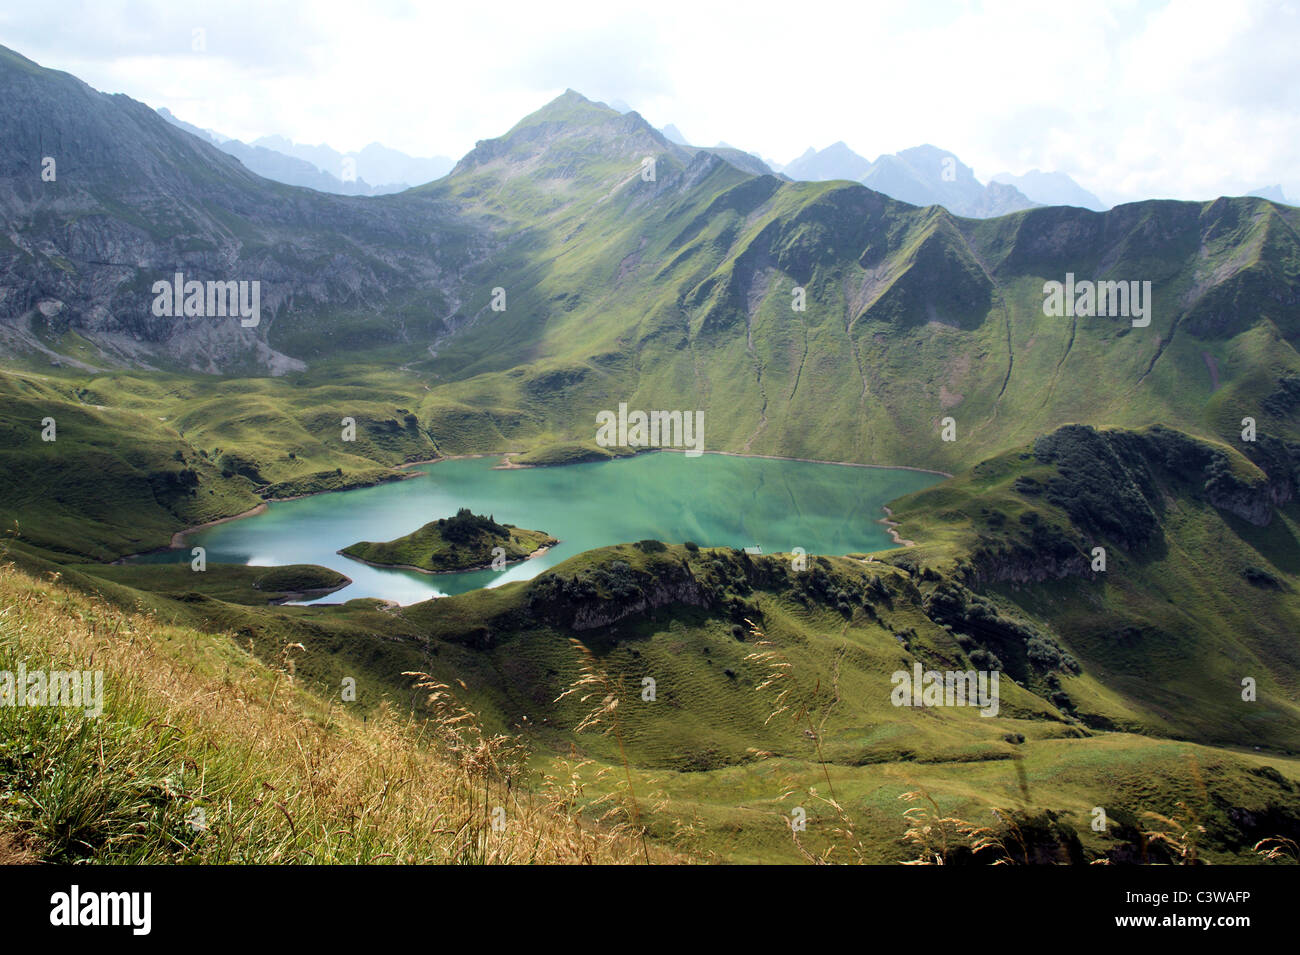 Ein wunderschöner, klarer Bergsee mitten in den Alpen Foto Stock